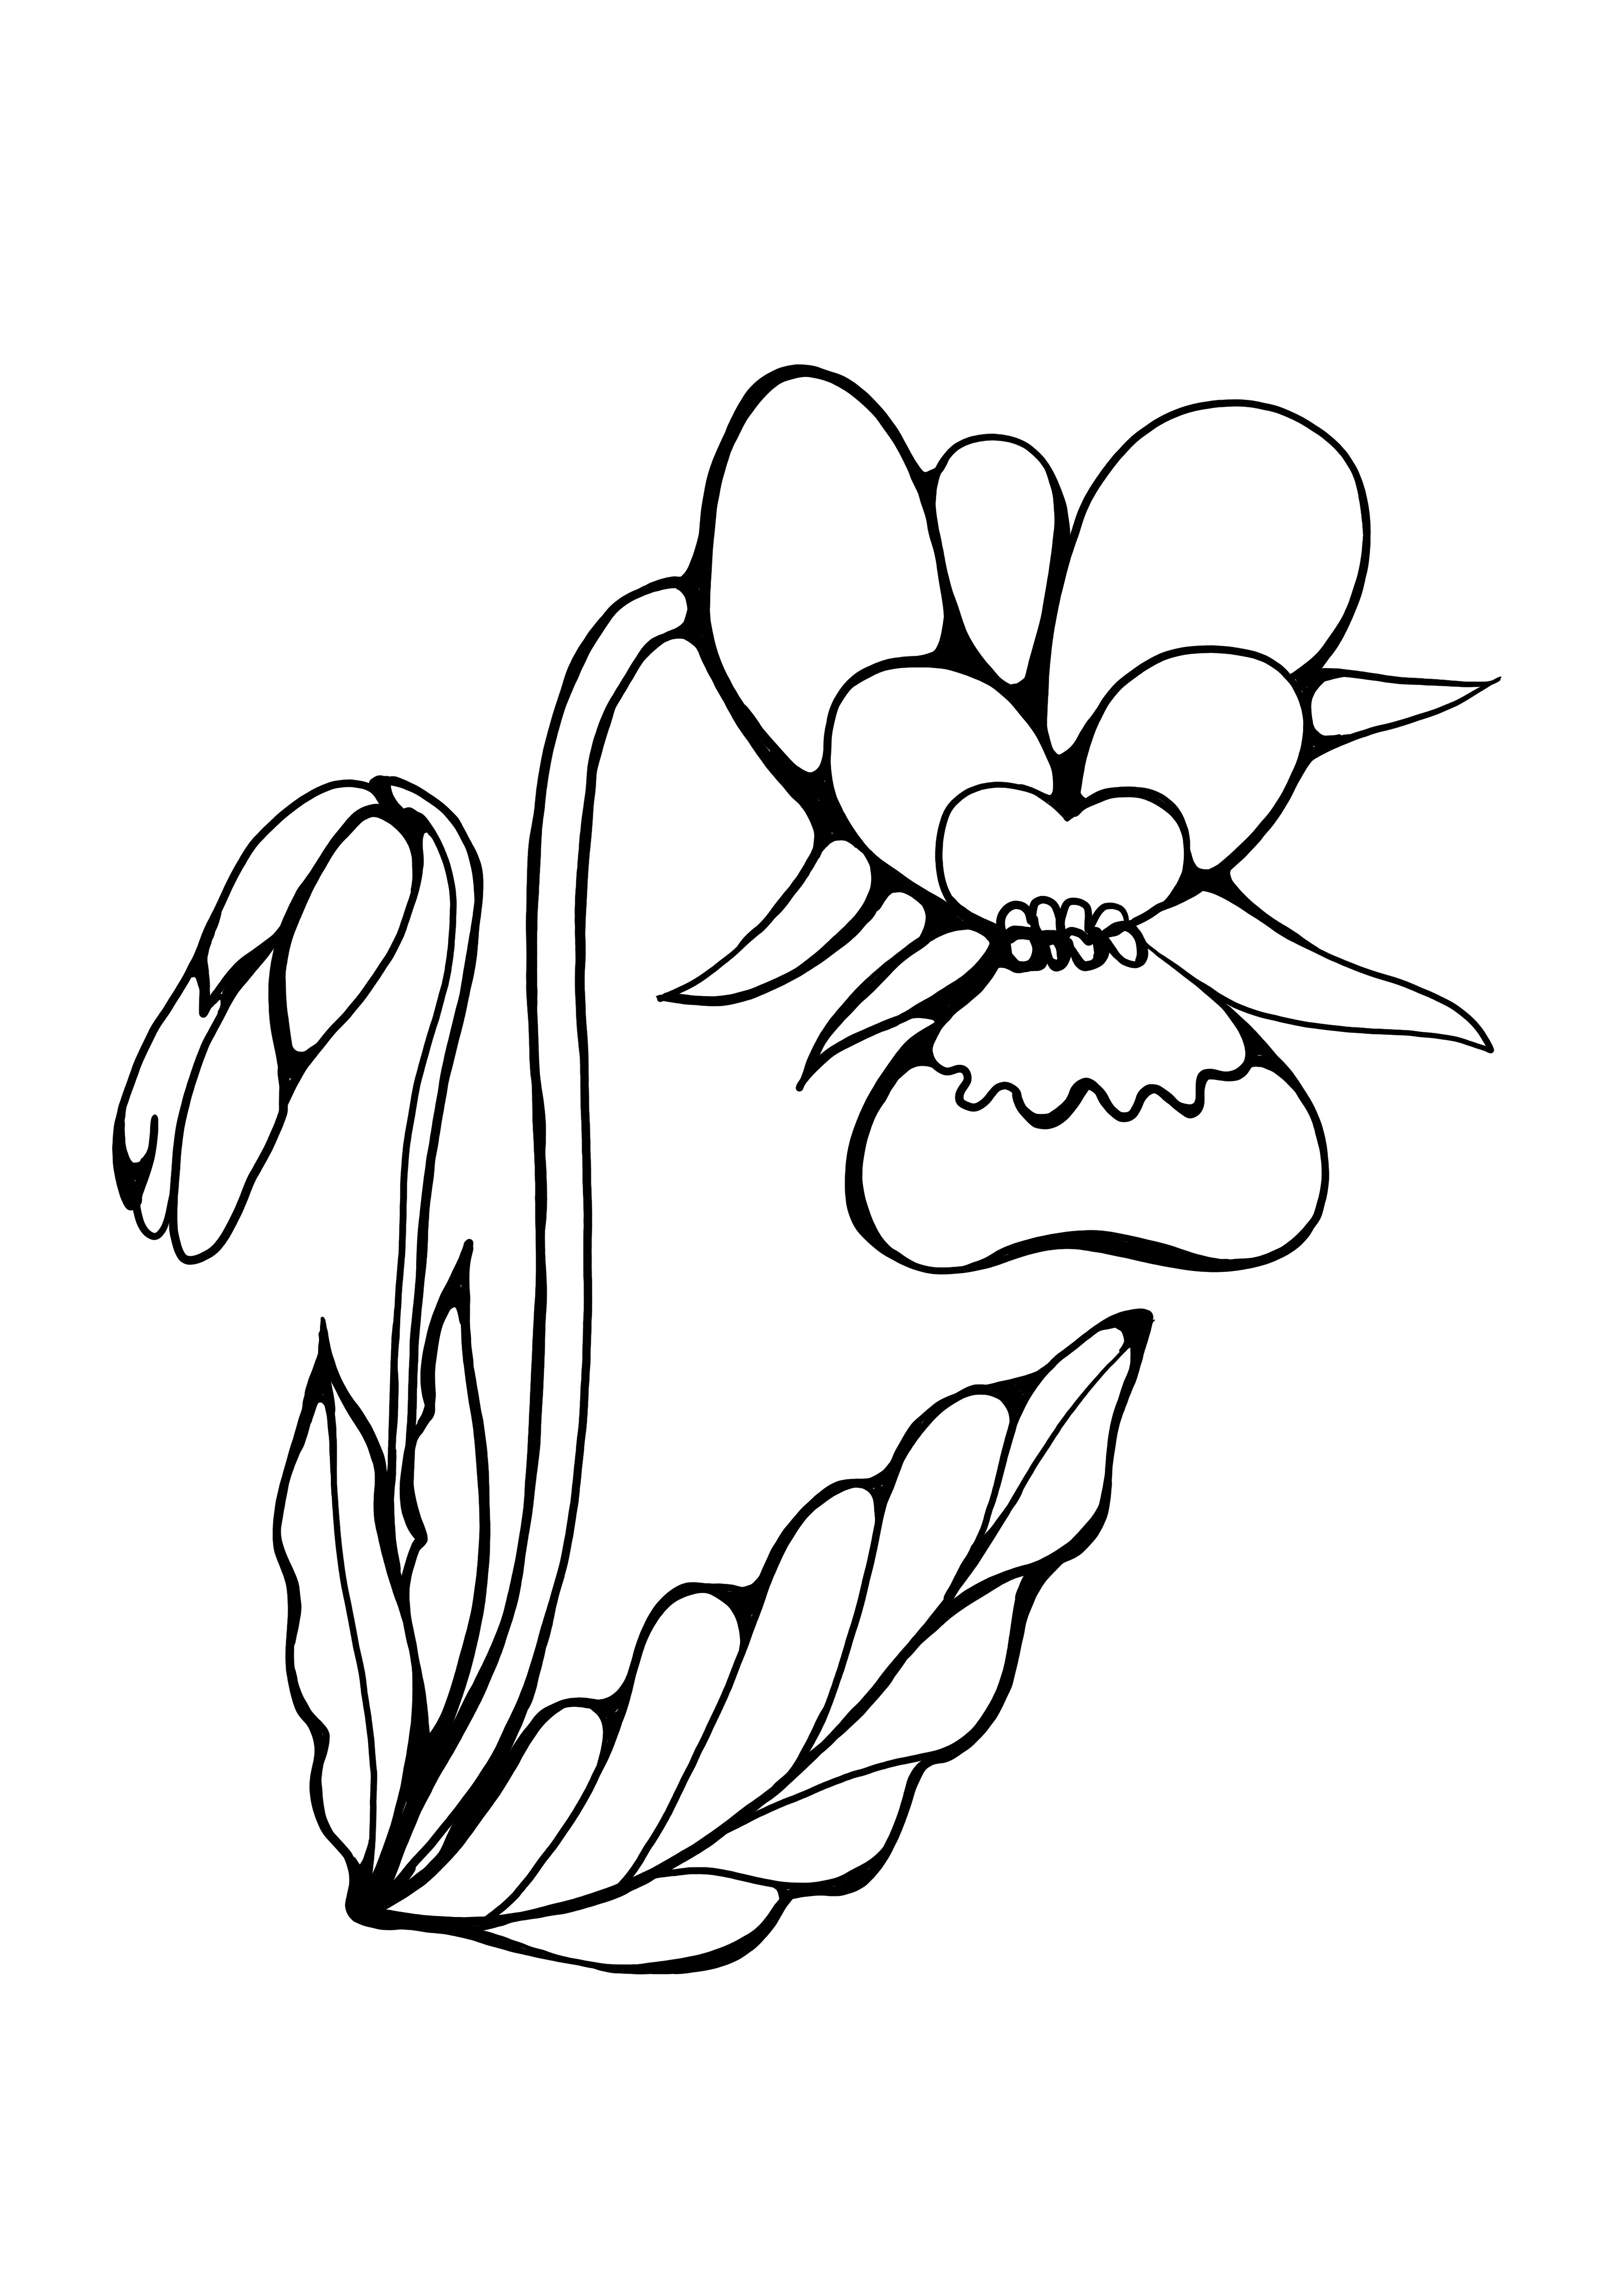 immagine da colorare orchidea stampabile gratis